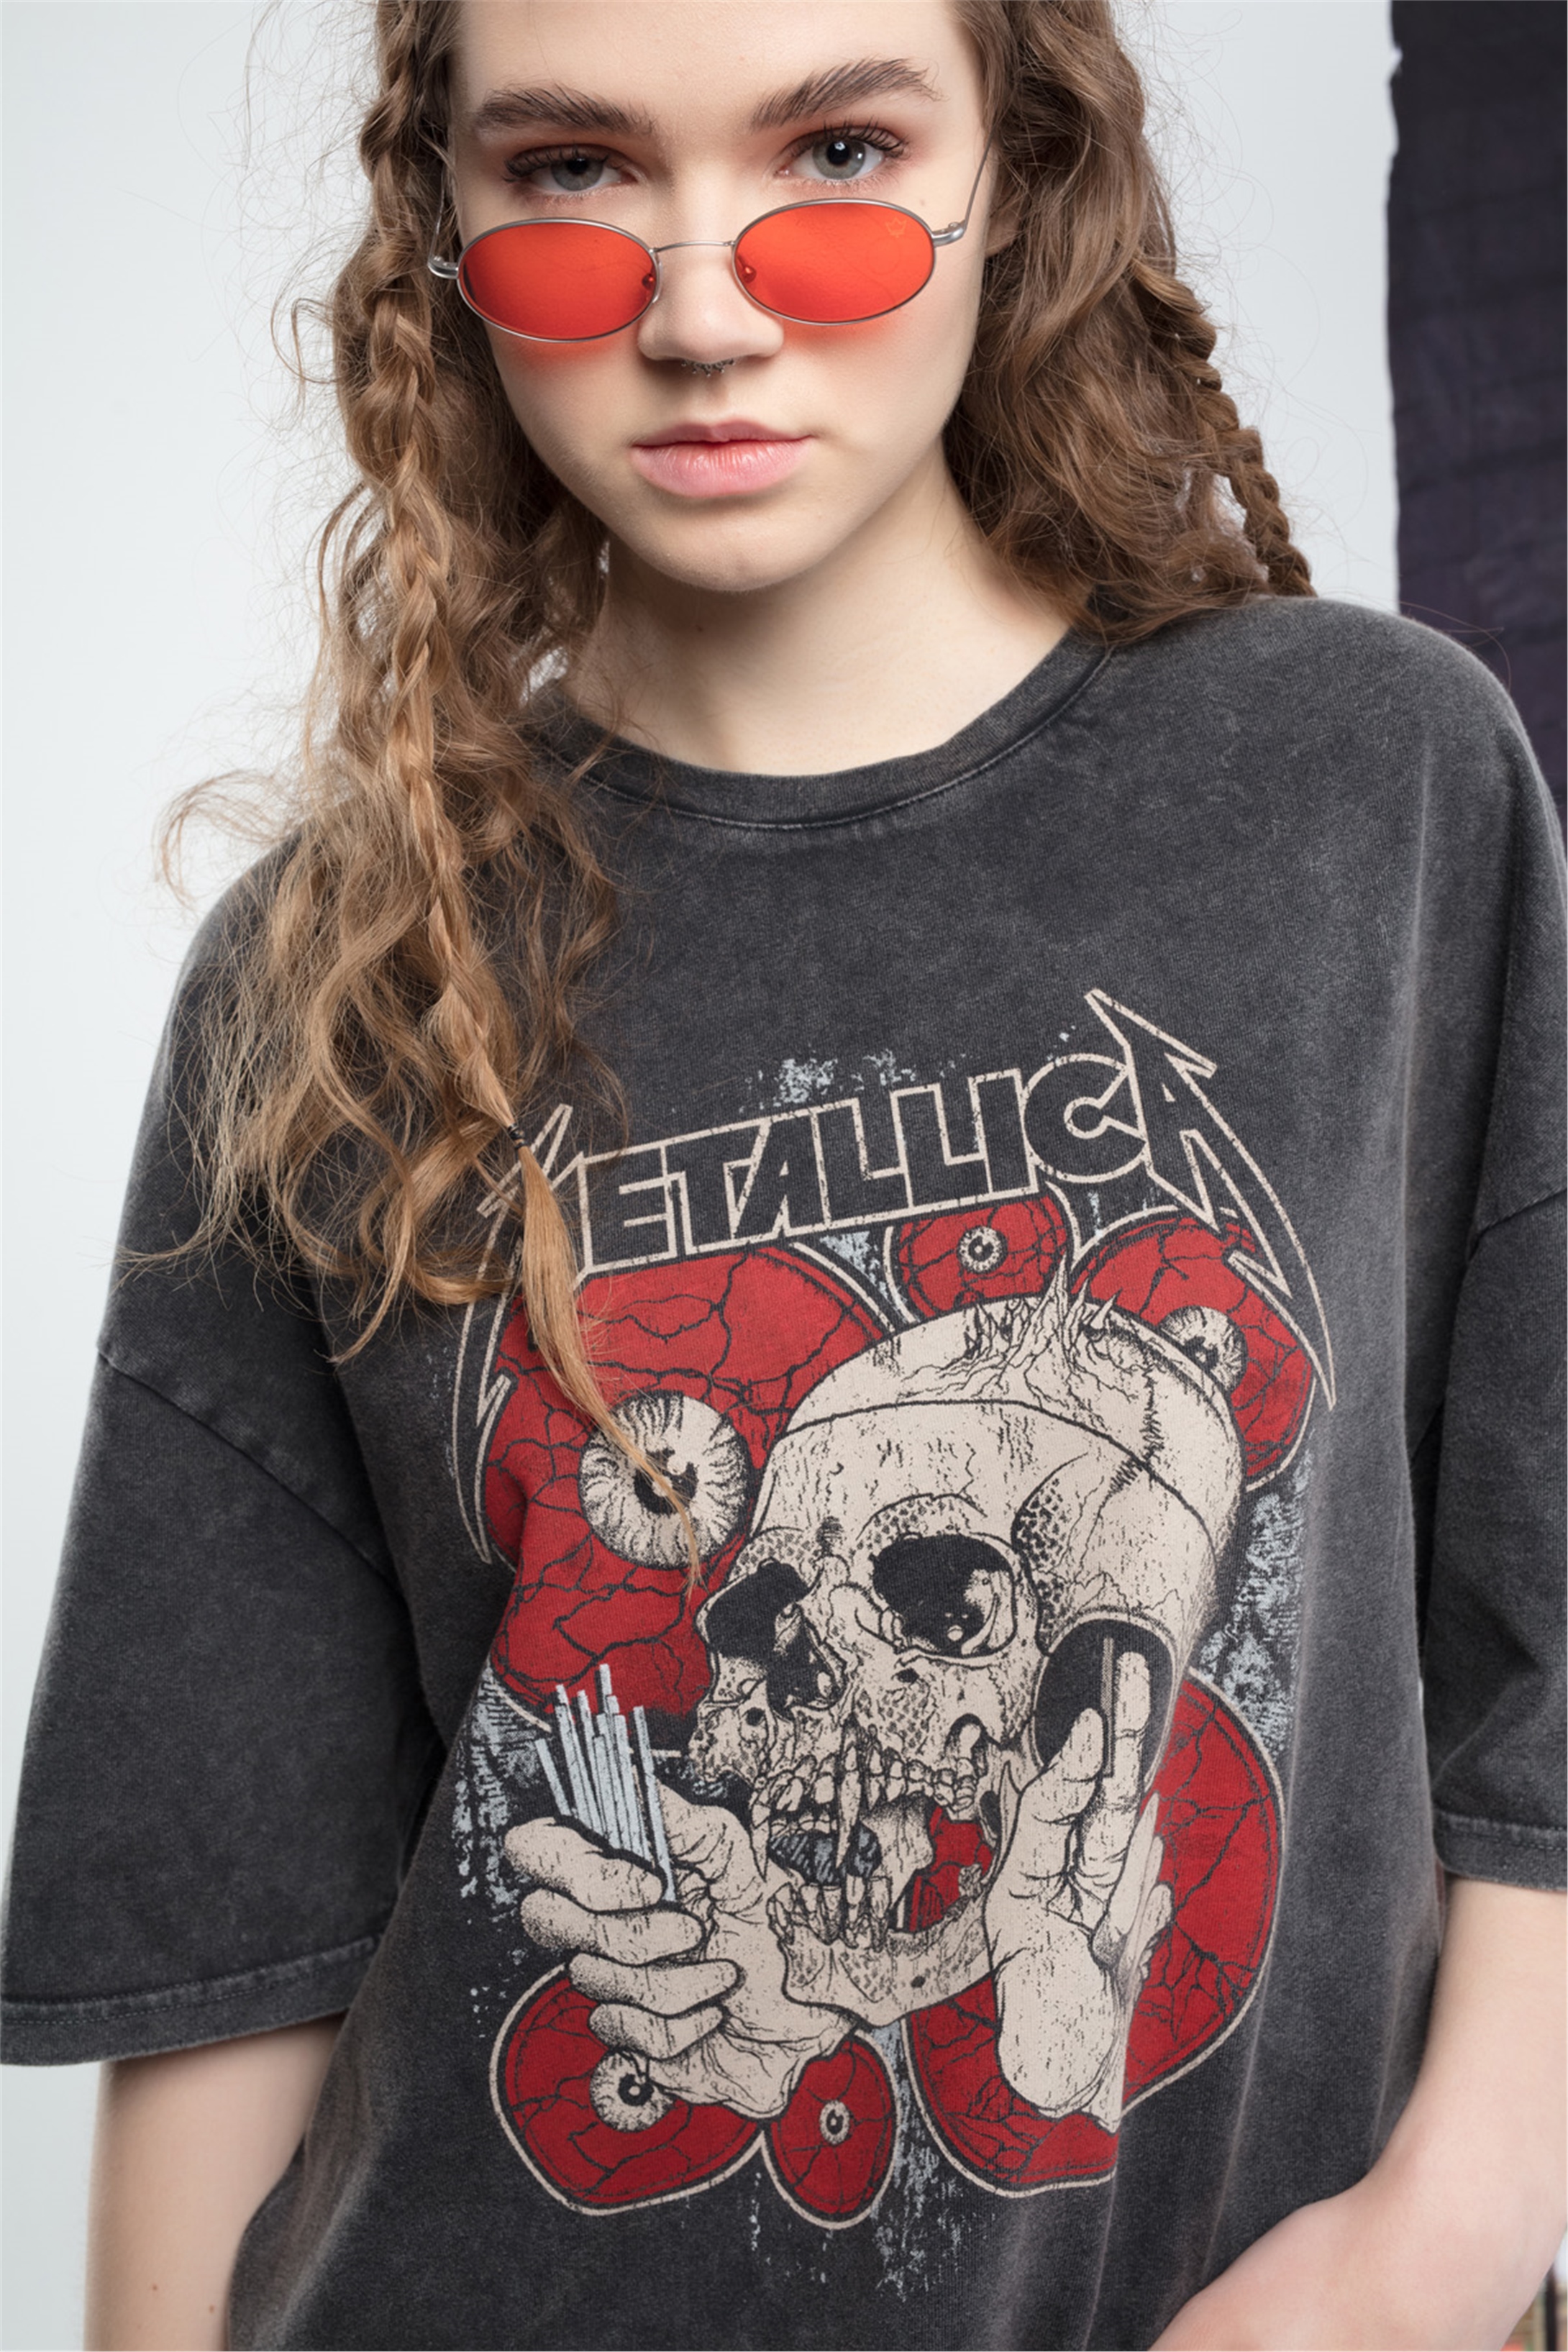 Trendiz Metallica Kadın Tshirt Antrasit - Trendiz